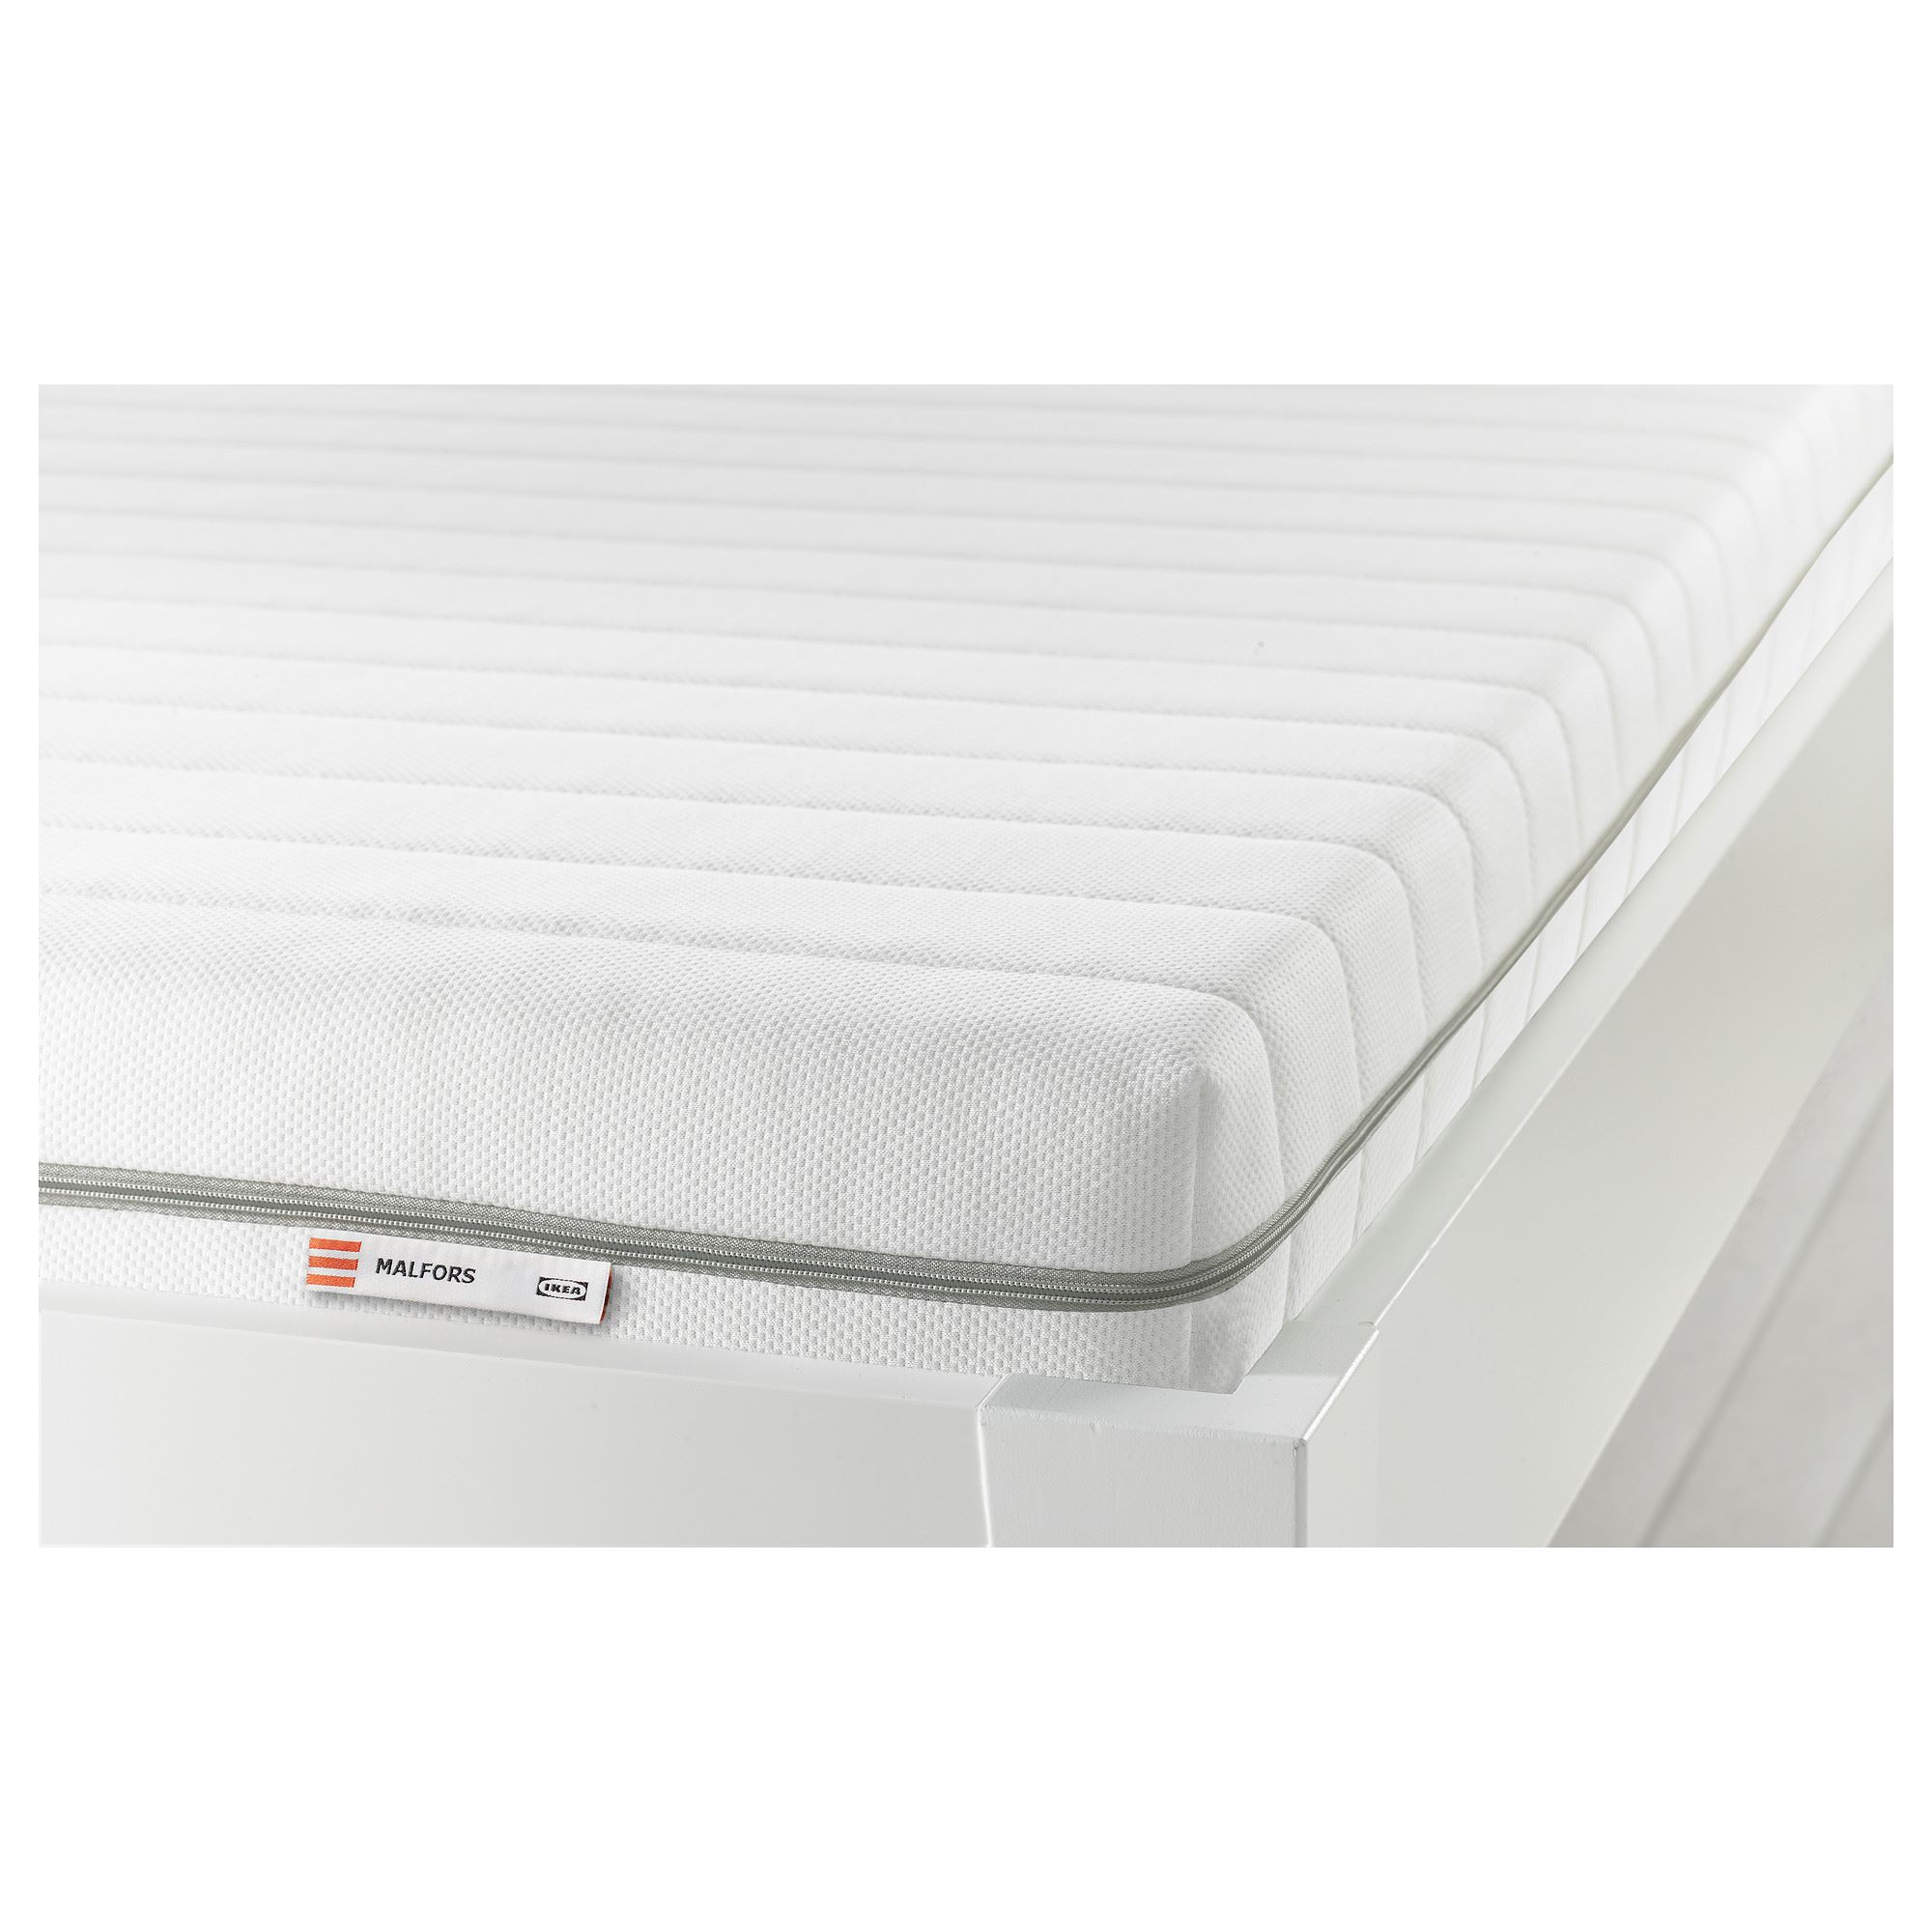 MALFORS tek kişilik yatak, beyazsert, 80x200 cm